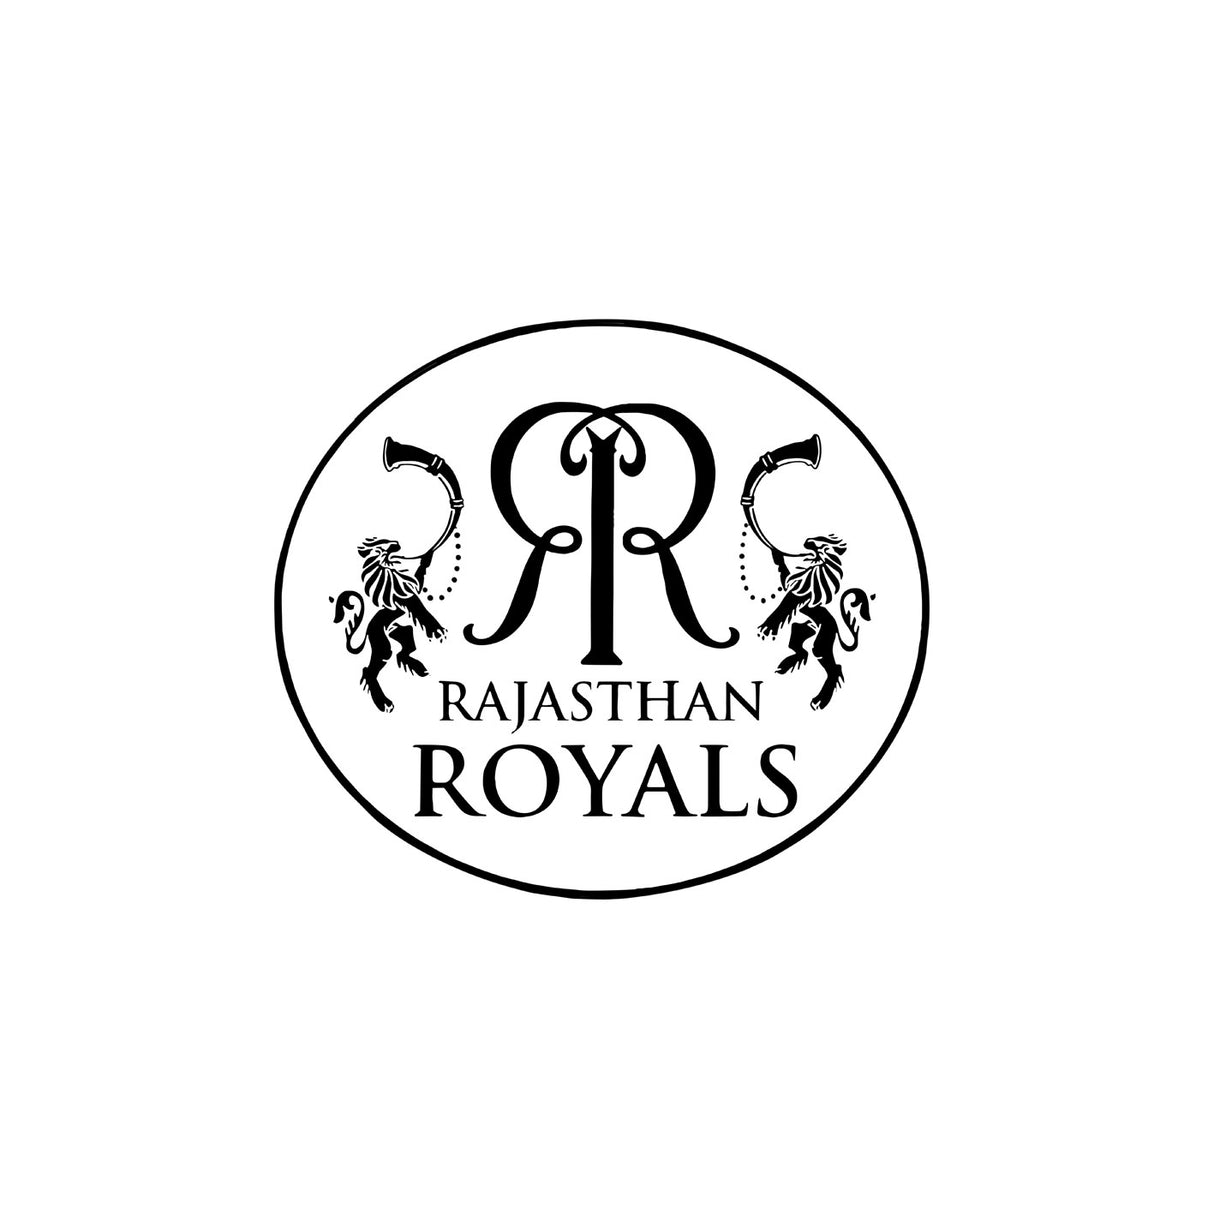 Rajasthan Royals - IPL Semi Permanent Tattoo